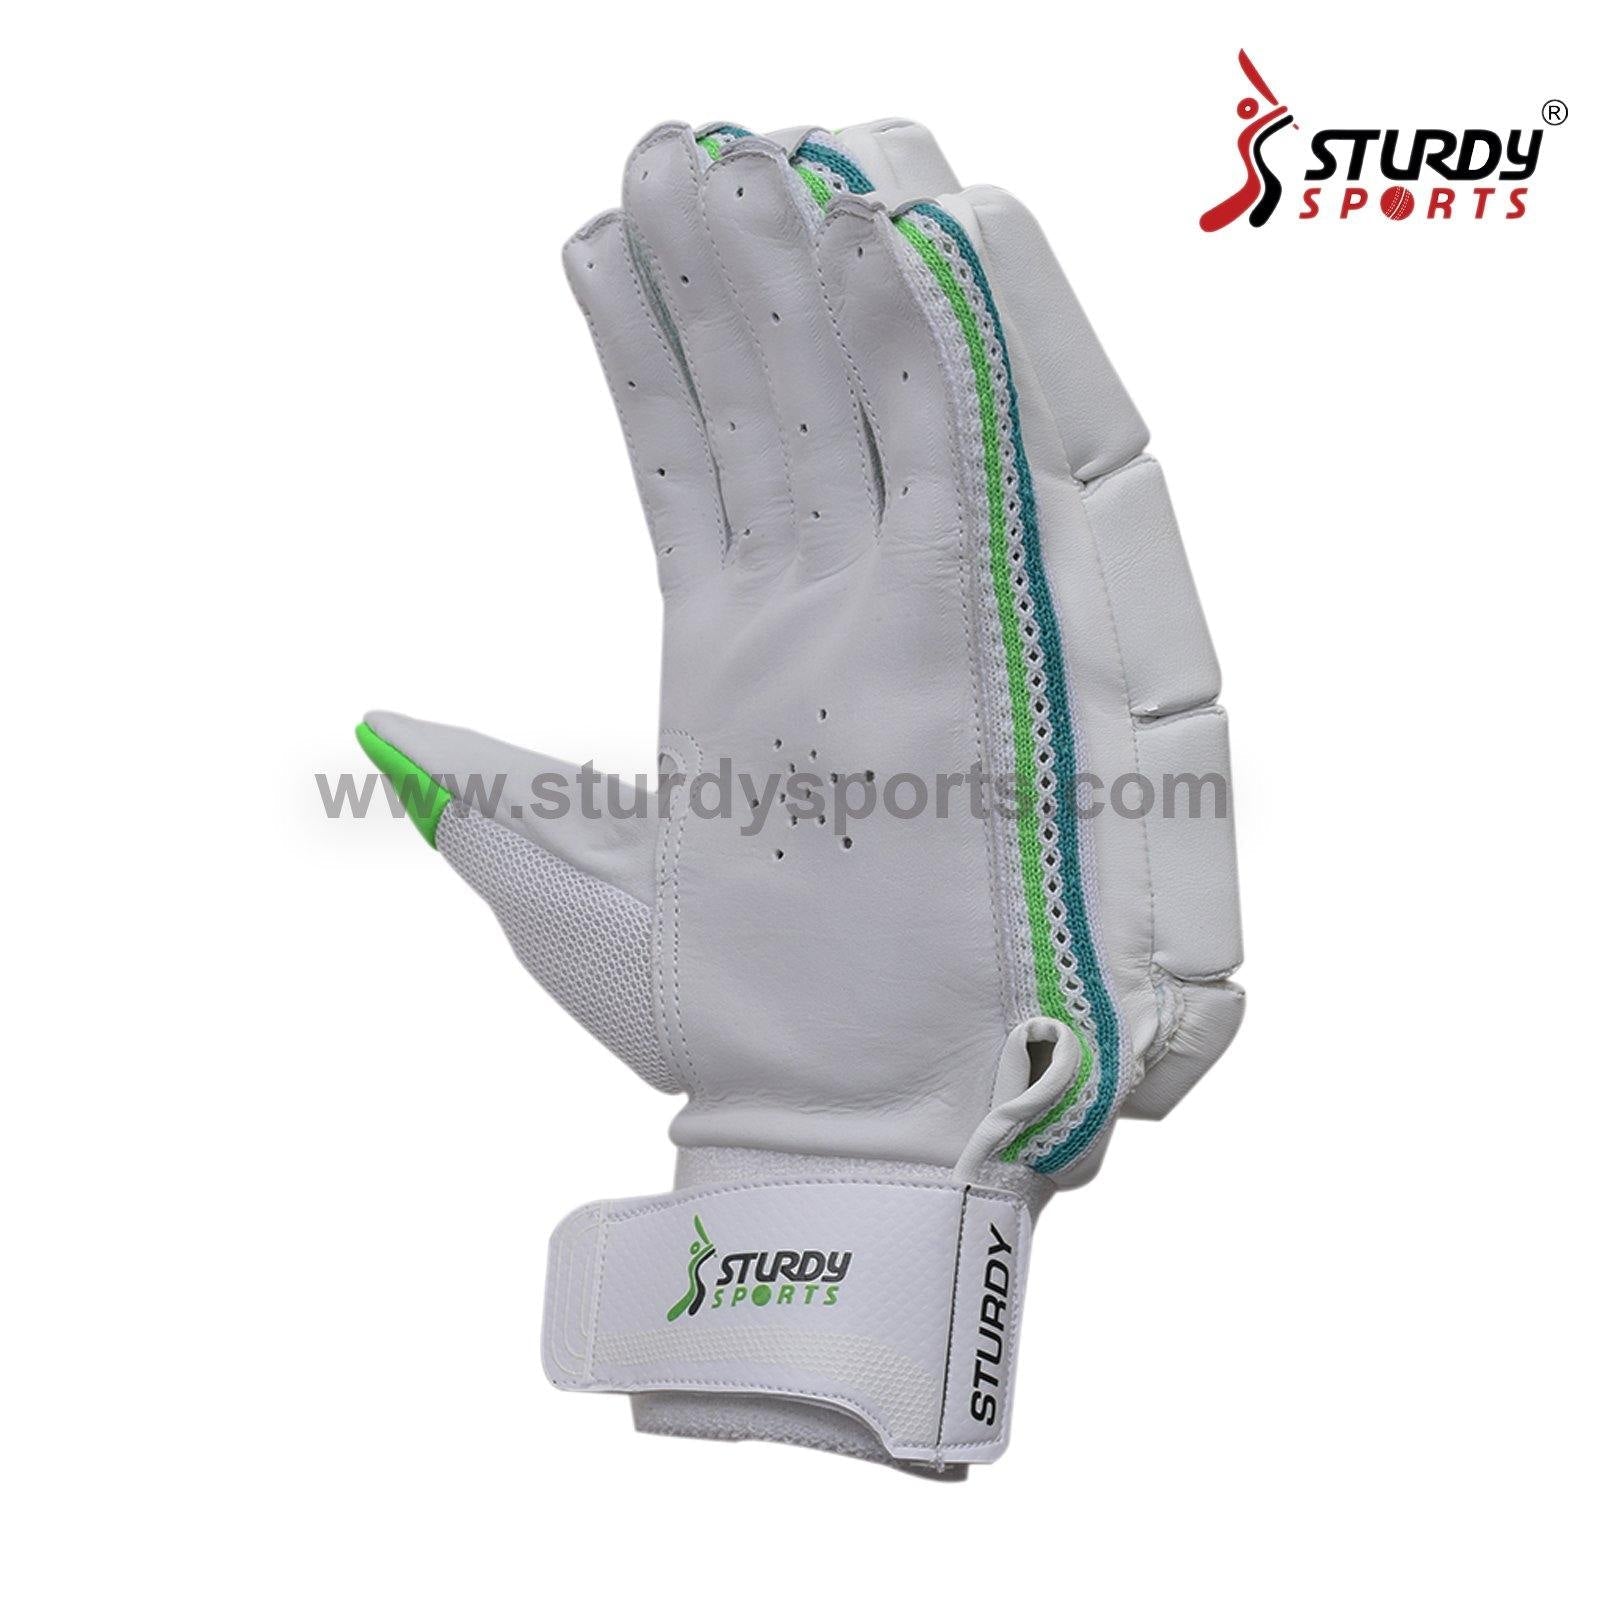 Sturdy Alligator Batting Cricket Gloves - Junior